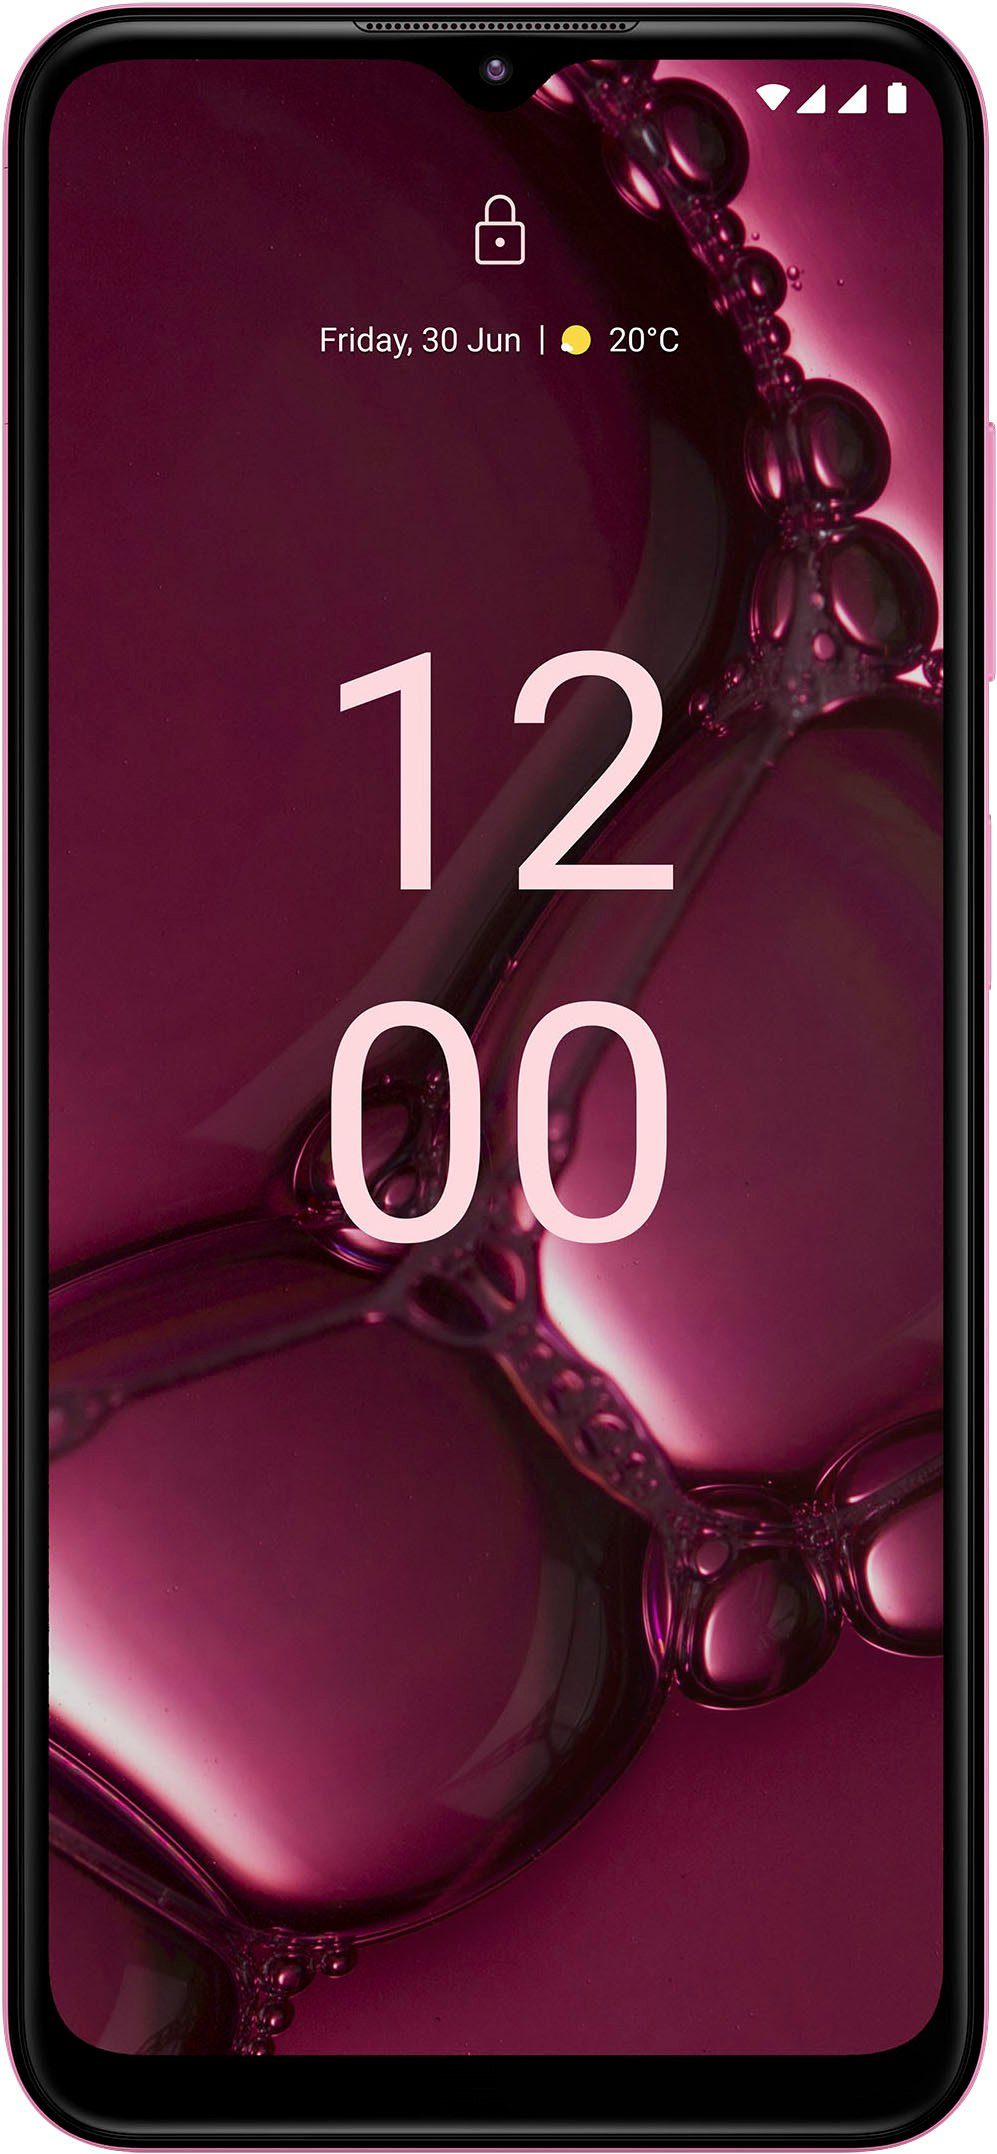 Beliebt & neu! Nokia G42 Smartphone (16,9 cm/6,65 Speicherplatz, Kamera) MP GB 128 Zoll, 50 pink